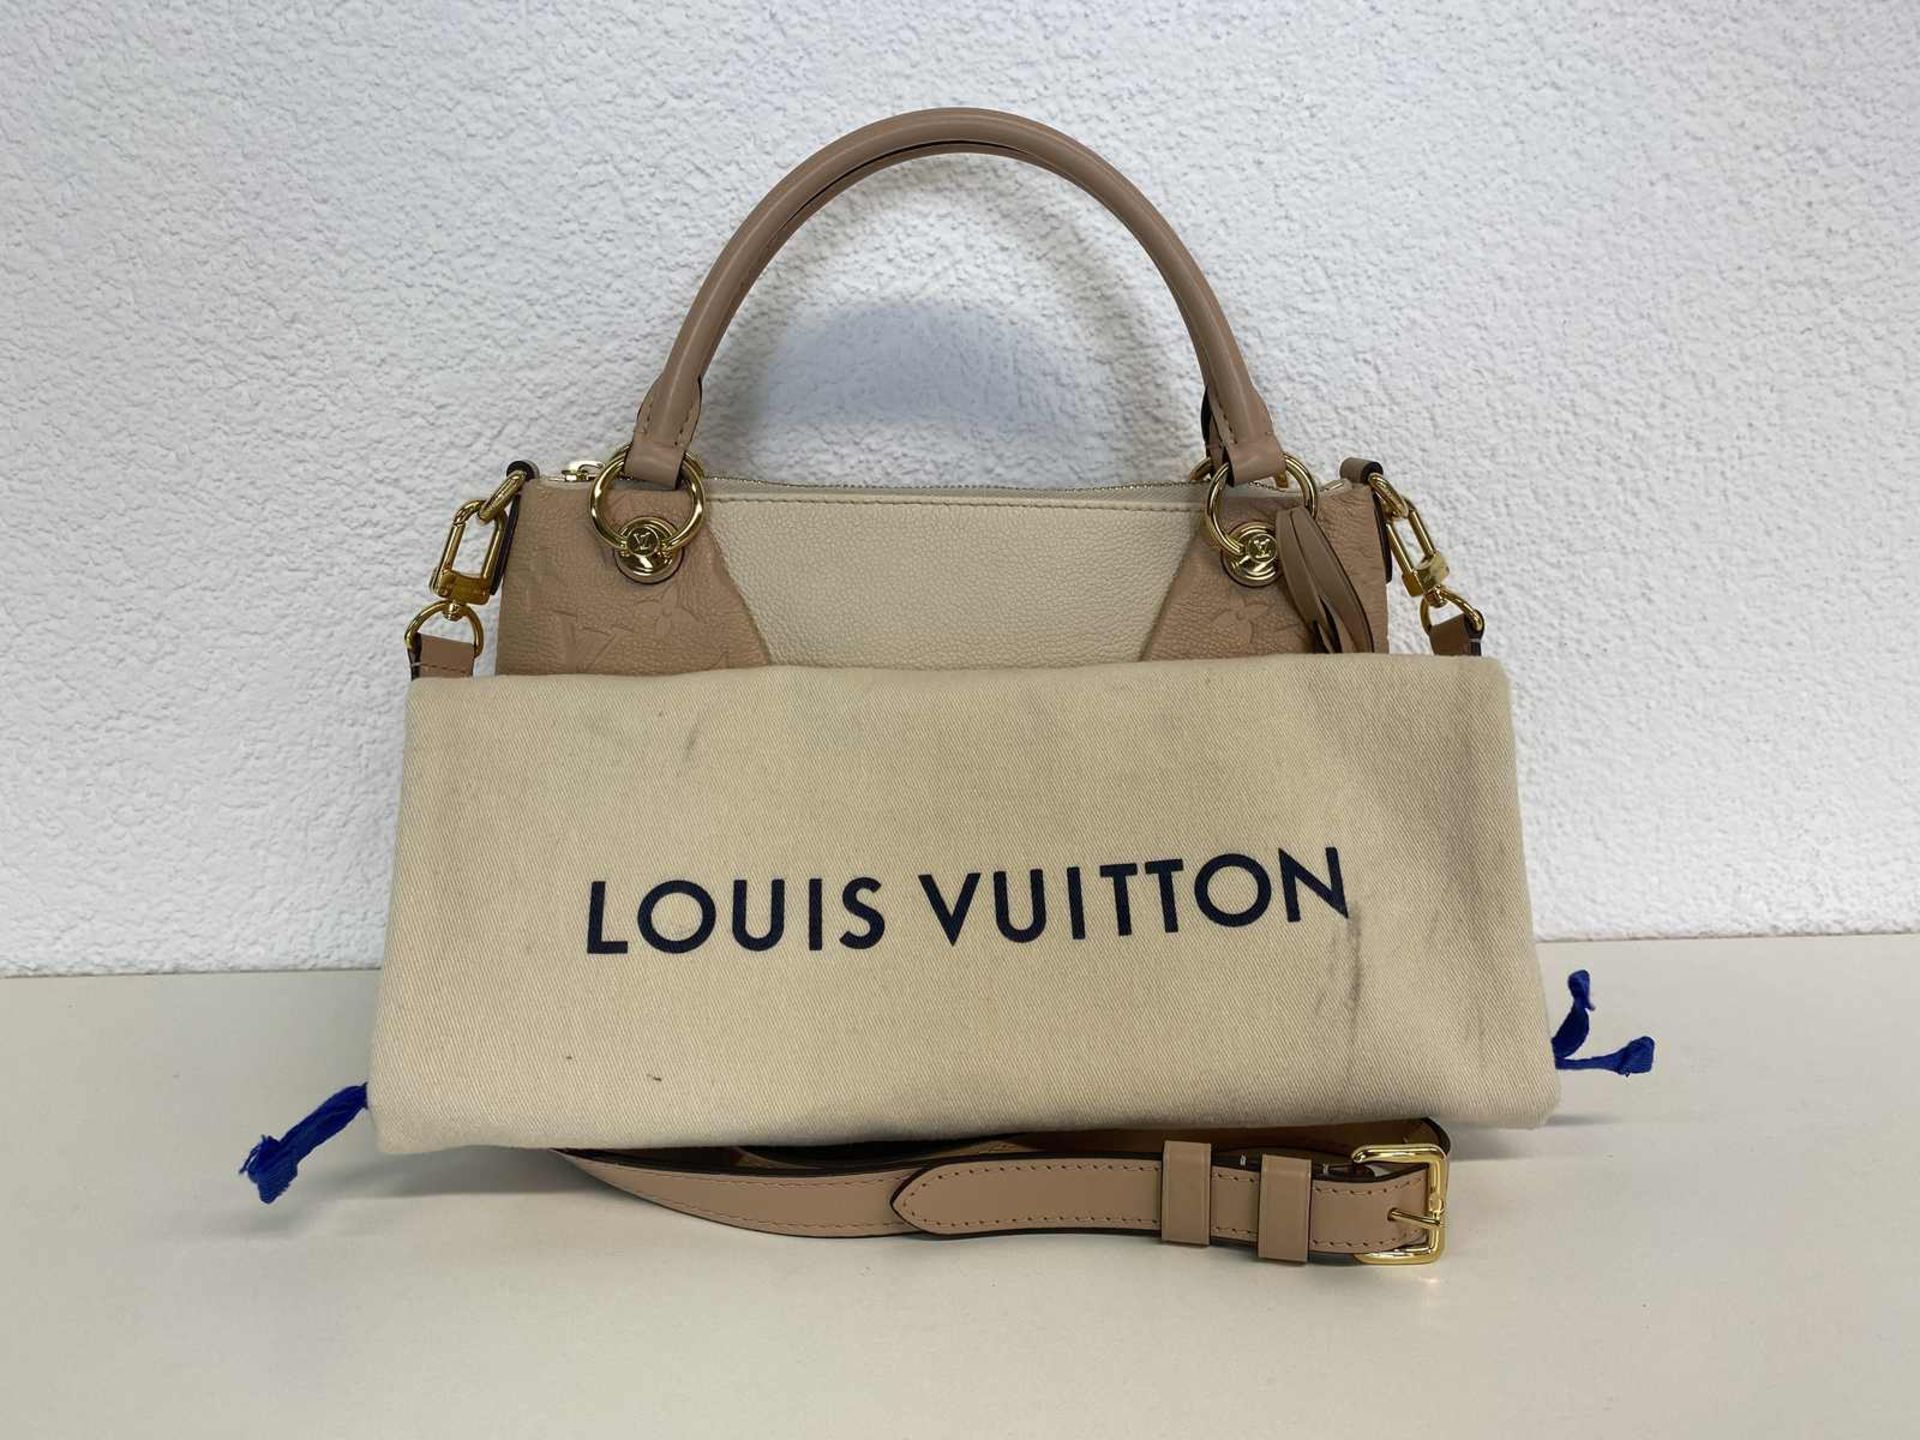 (*) LOUIS VUITTON Handtasche Louis Vuitton Tote Bag, Leder in creme beige mit Monogram Prägung. - Bild 2 aus 7